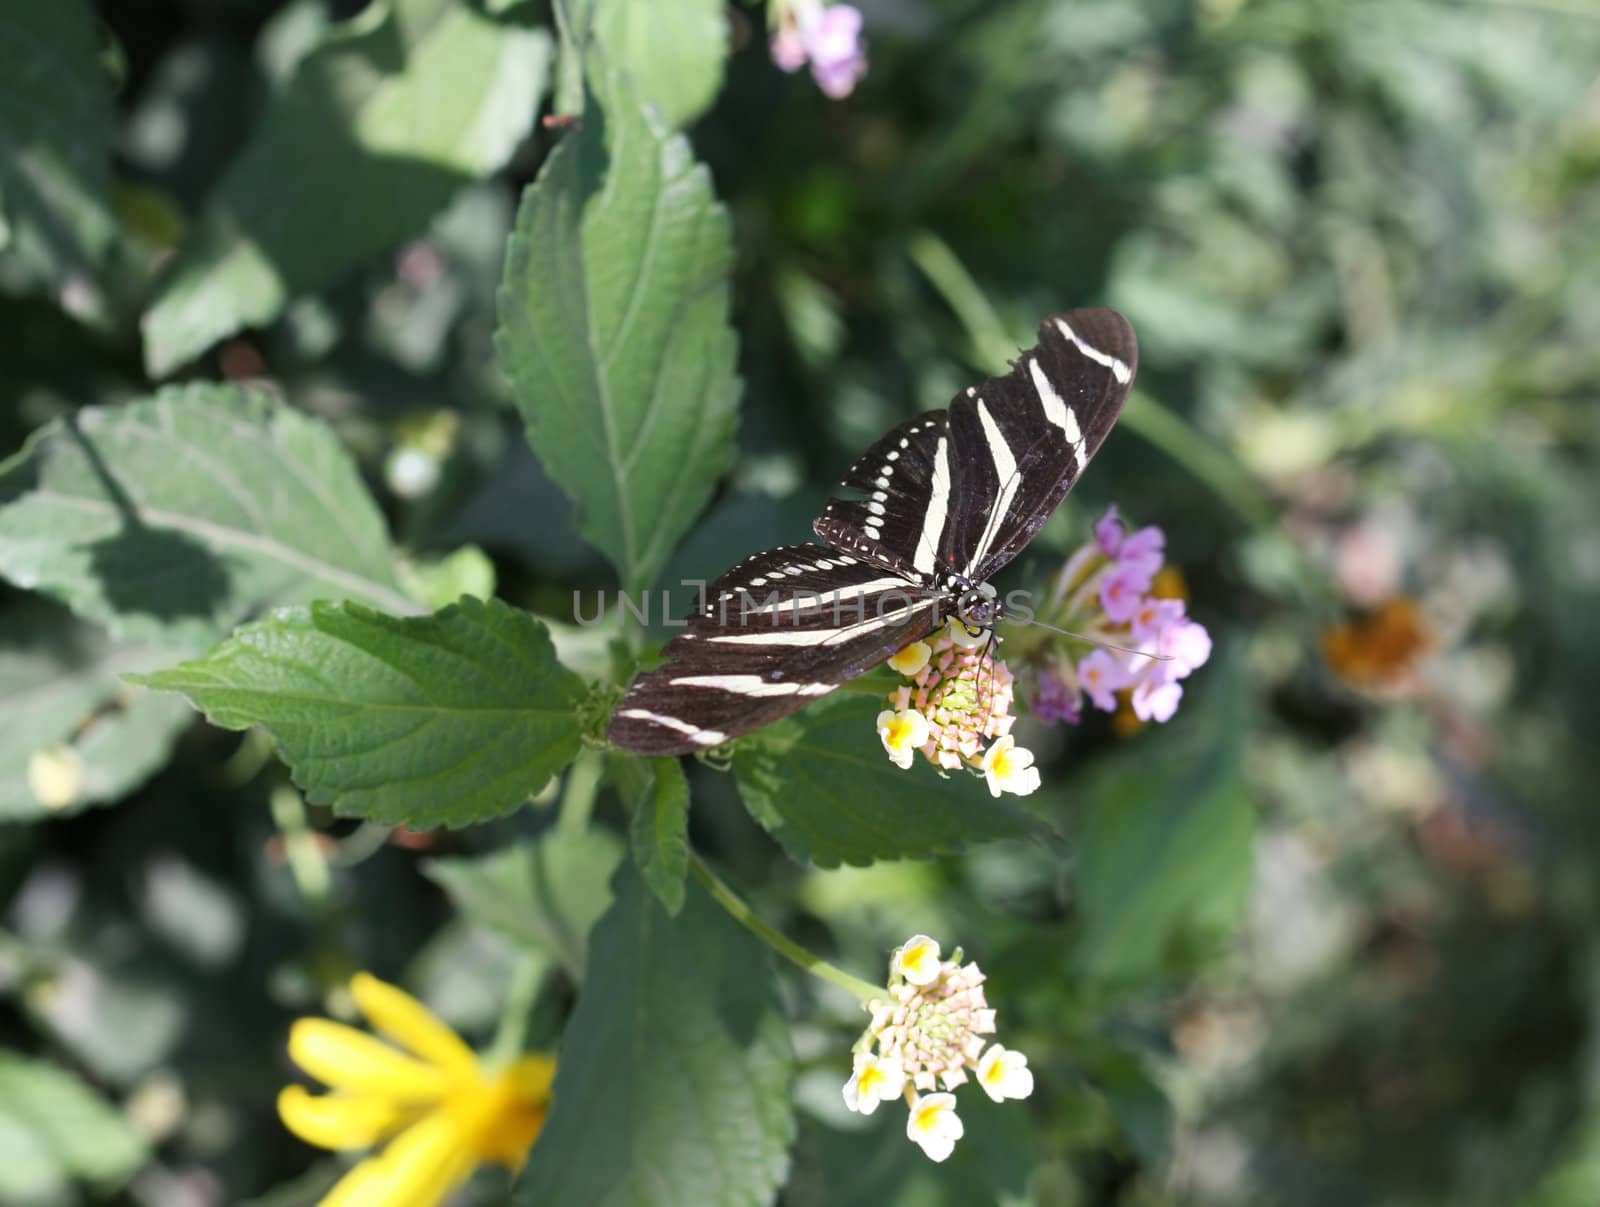 Zebra Longwing Butterfly  by deserttrends